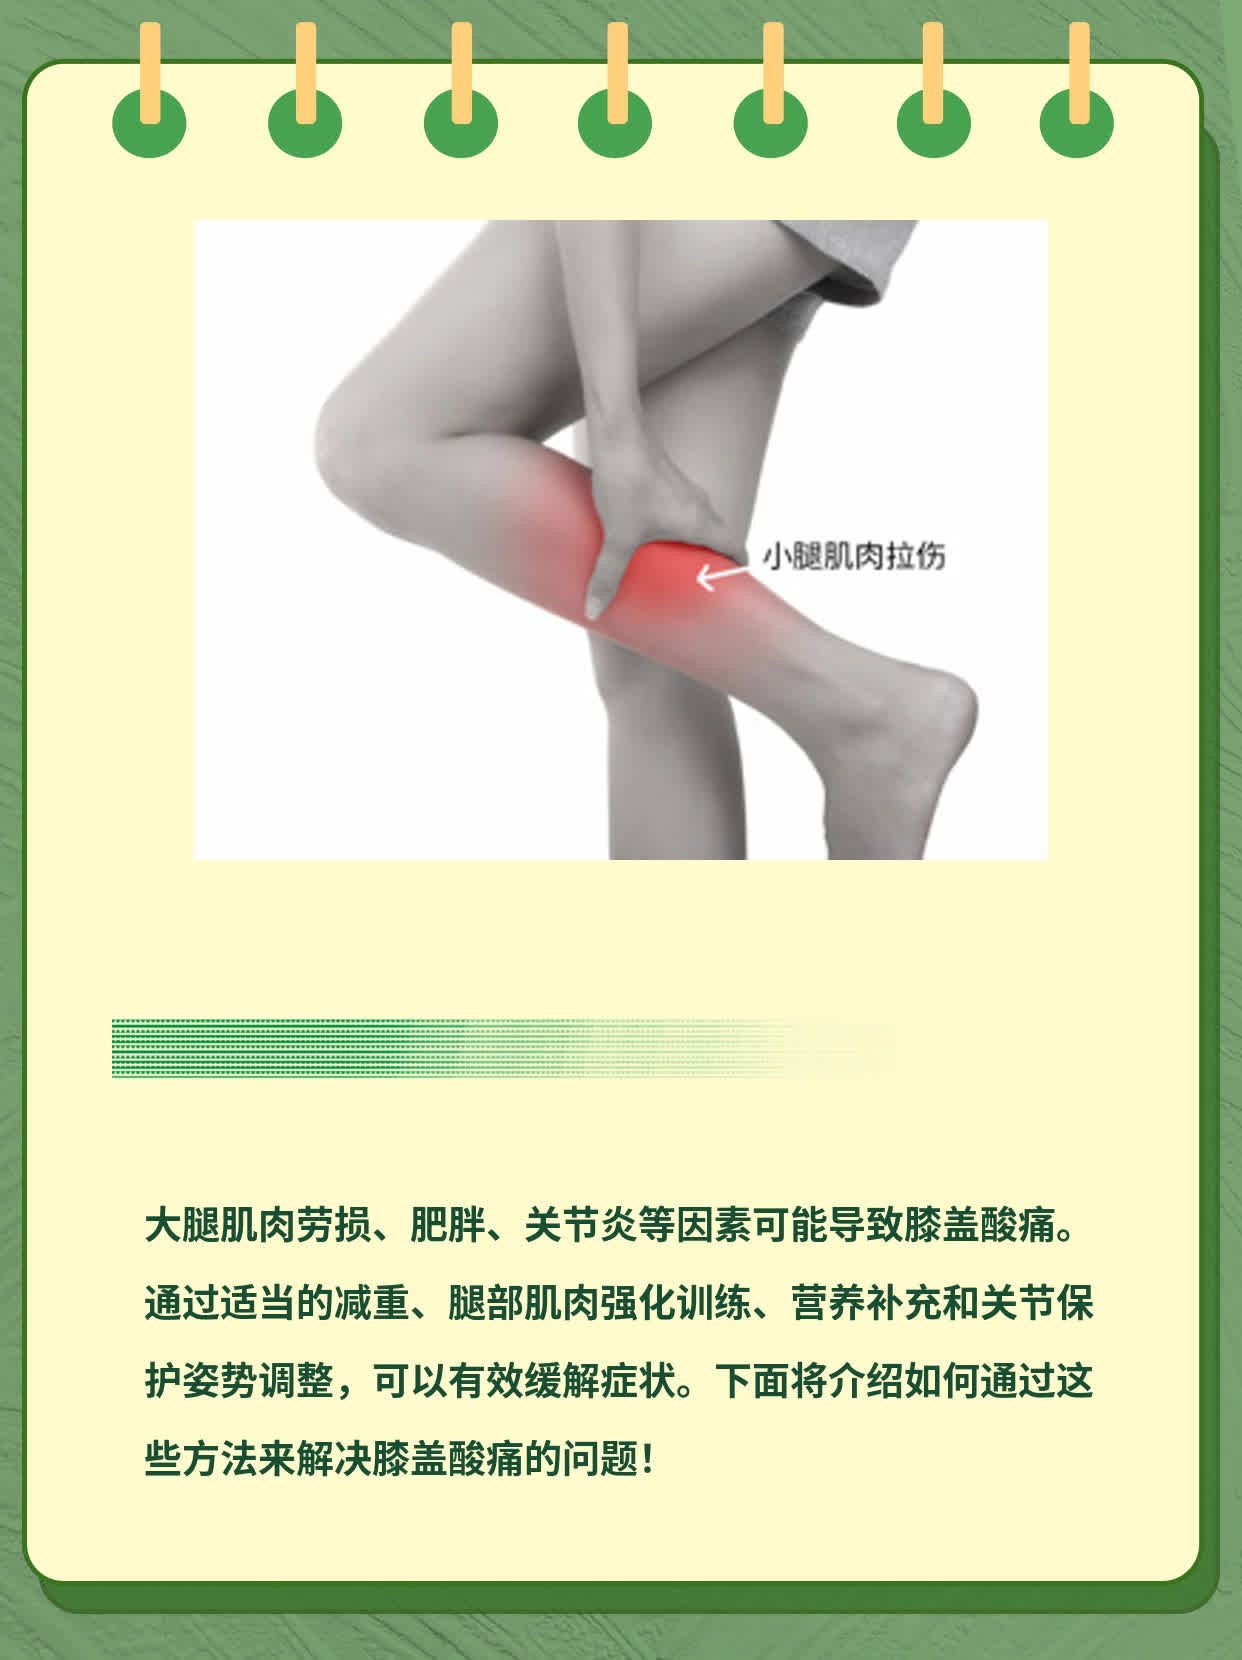 「膝盖酸痛」：发现并解决困扰！